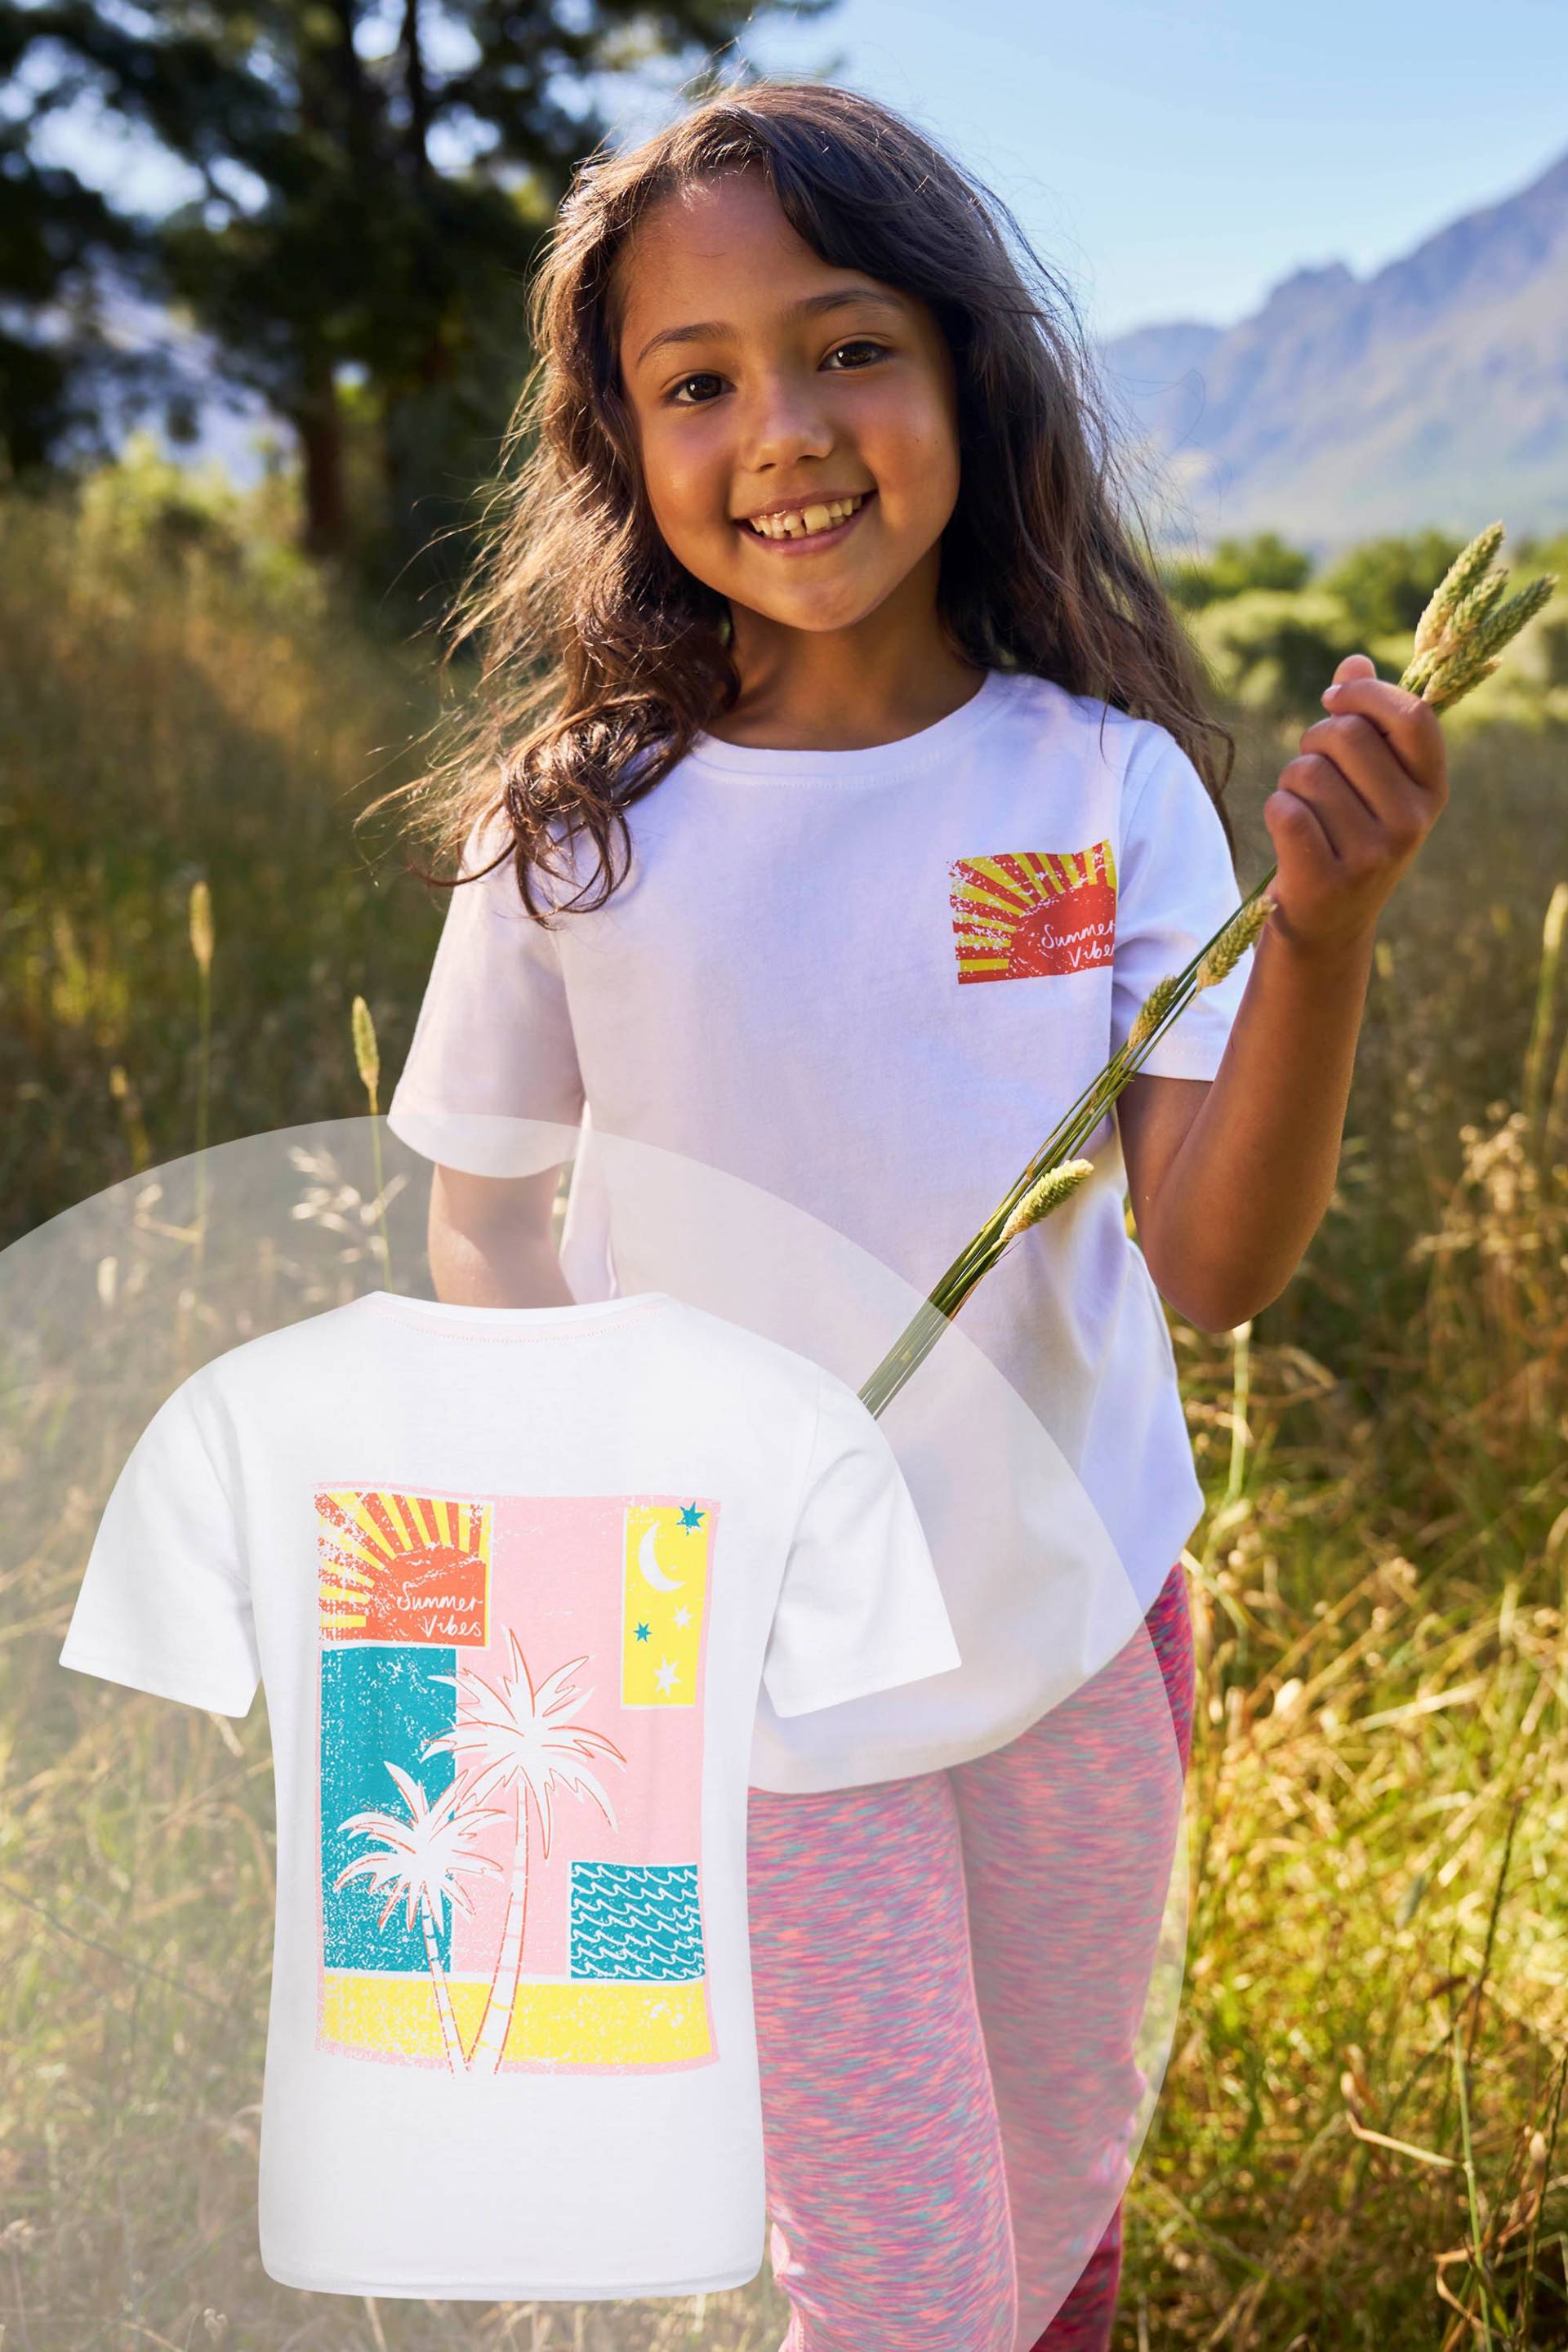 Palm Tree Kinder Bio-Baumwoll T-Shirt - Weiss von Mountain Warehouse